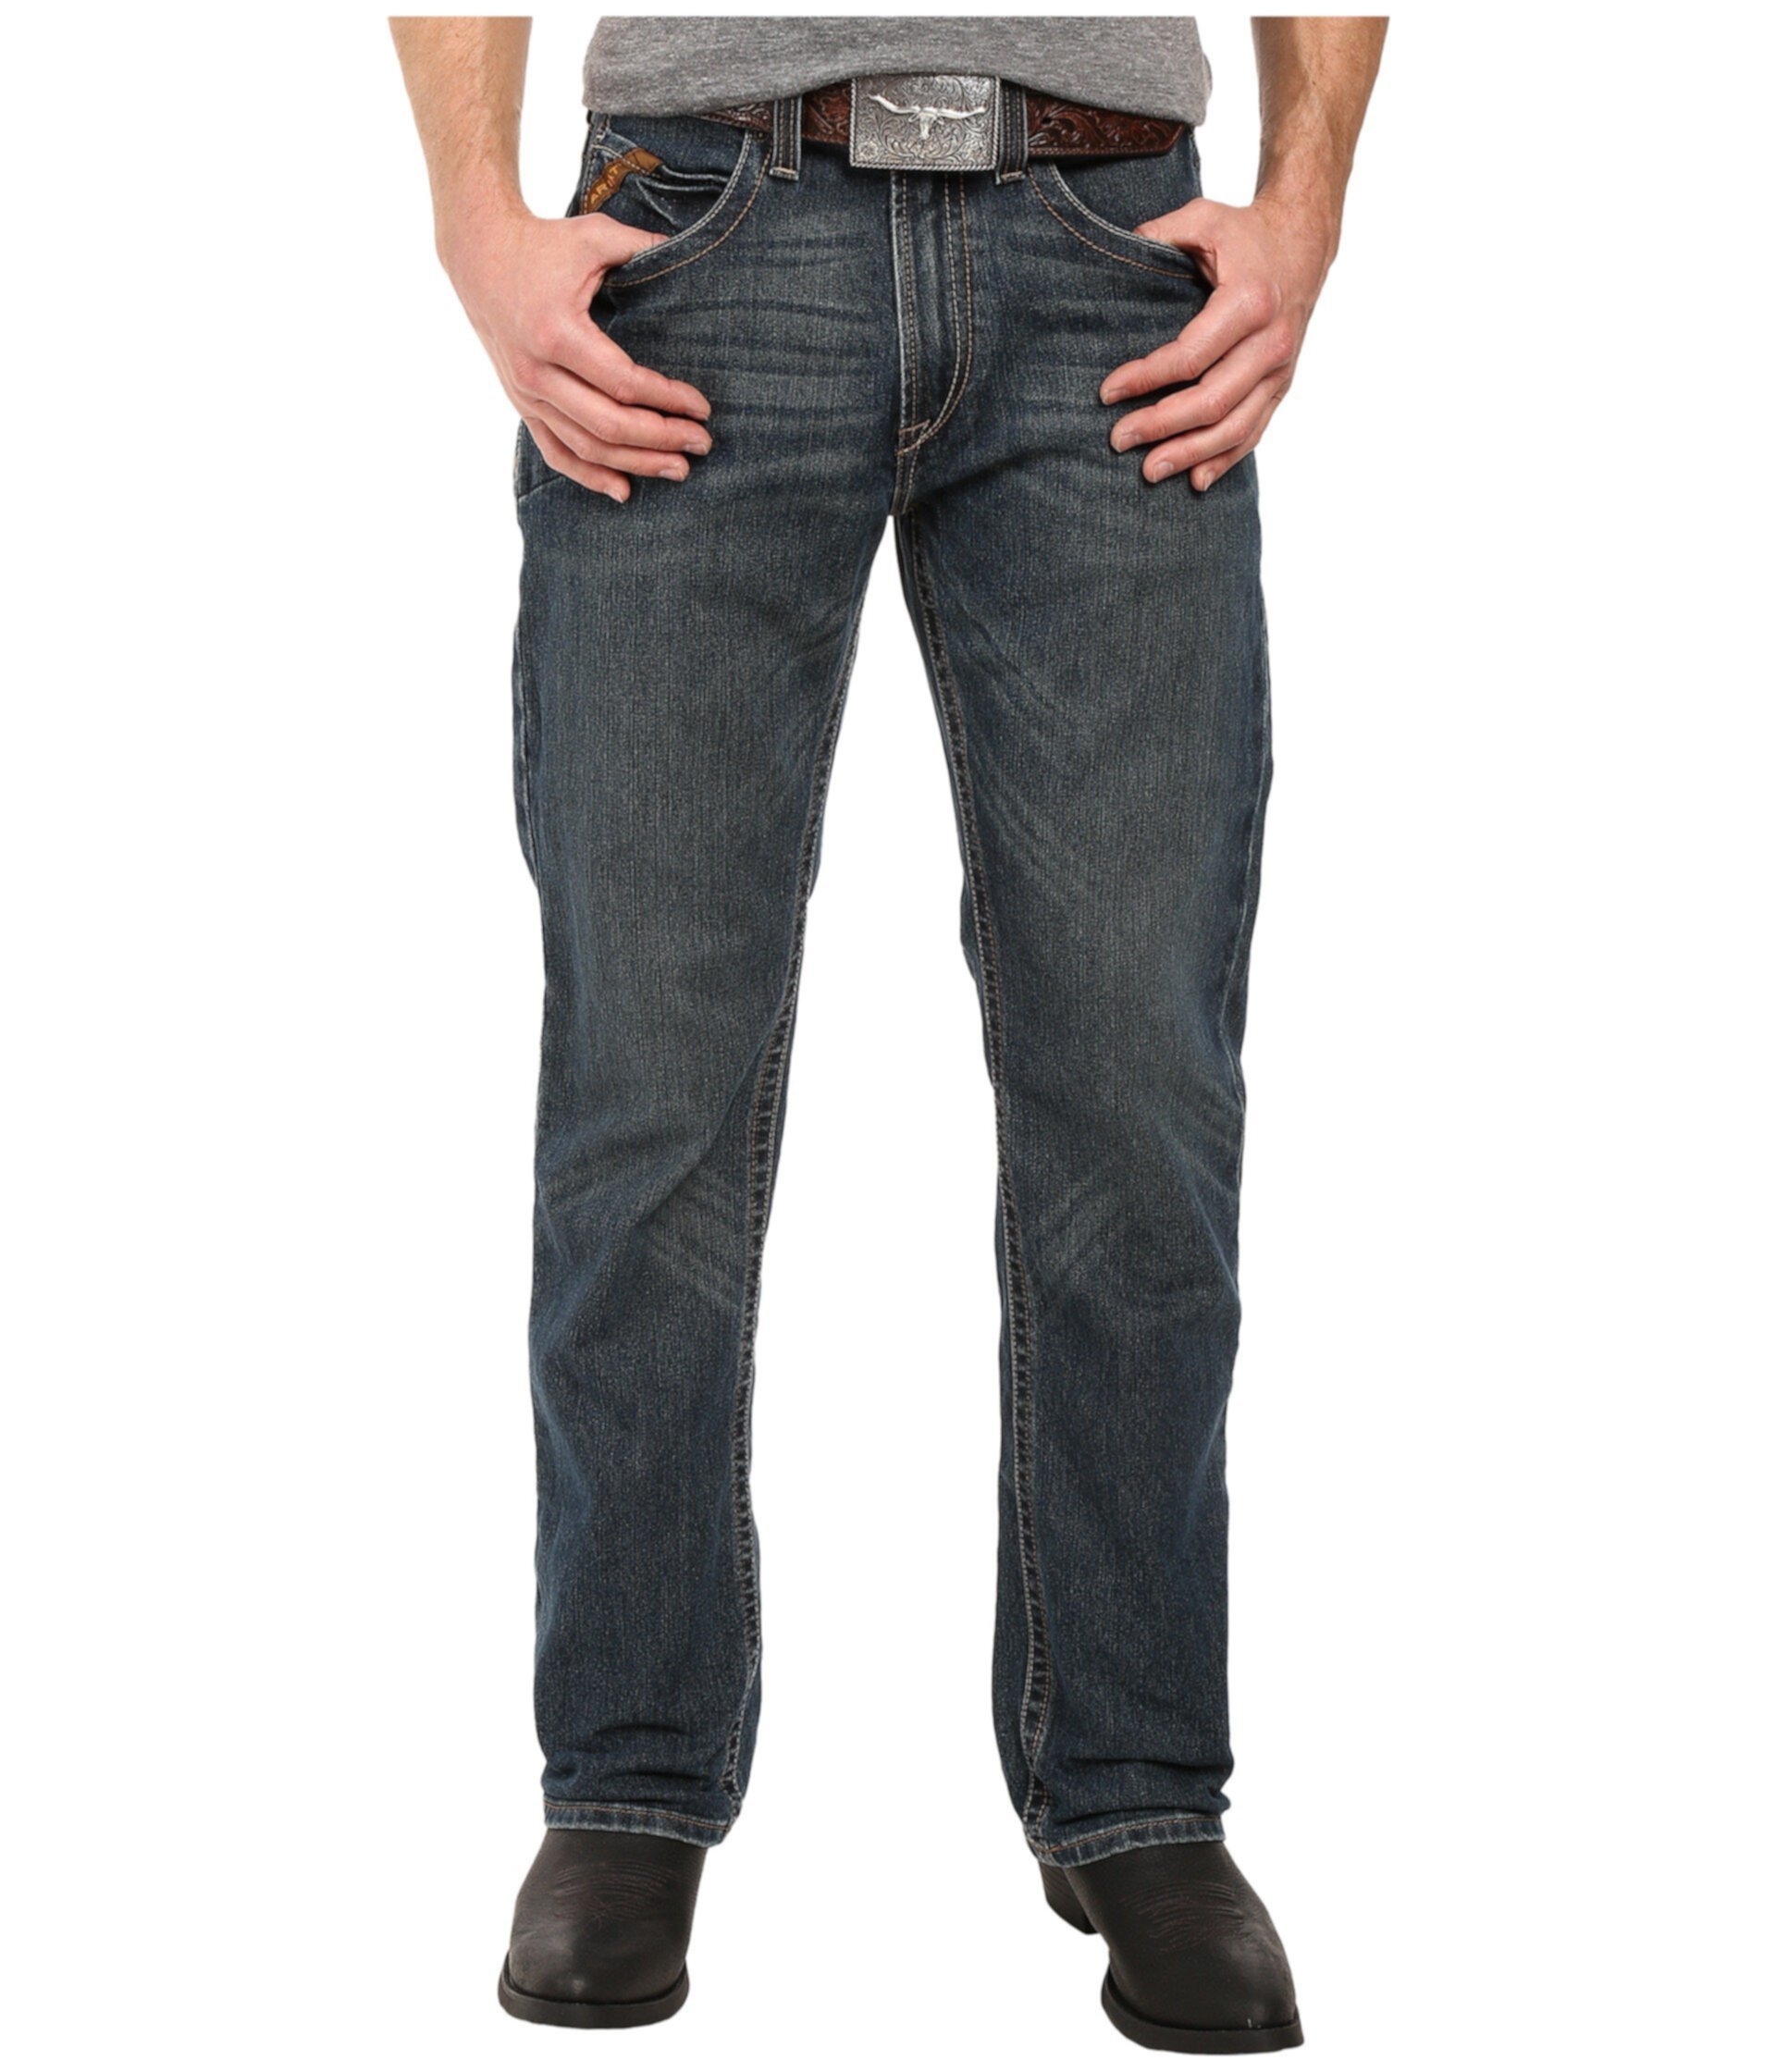 Зауженные прямые джинсы Rebar M5 с отделкой по бокам Ironside Ariat